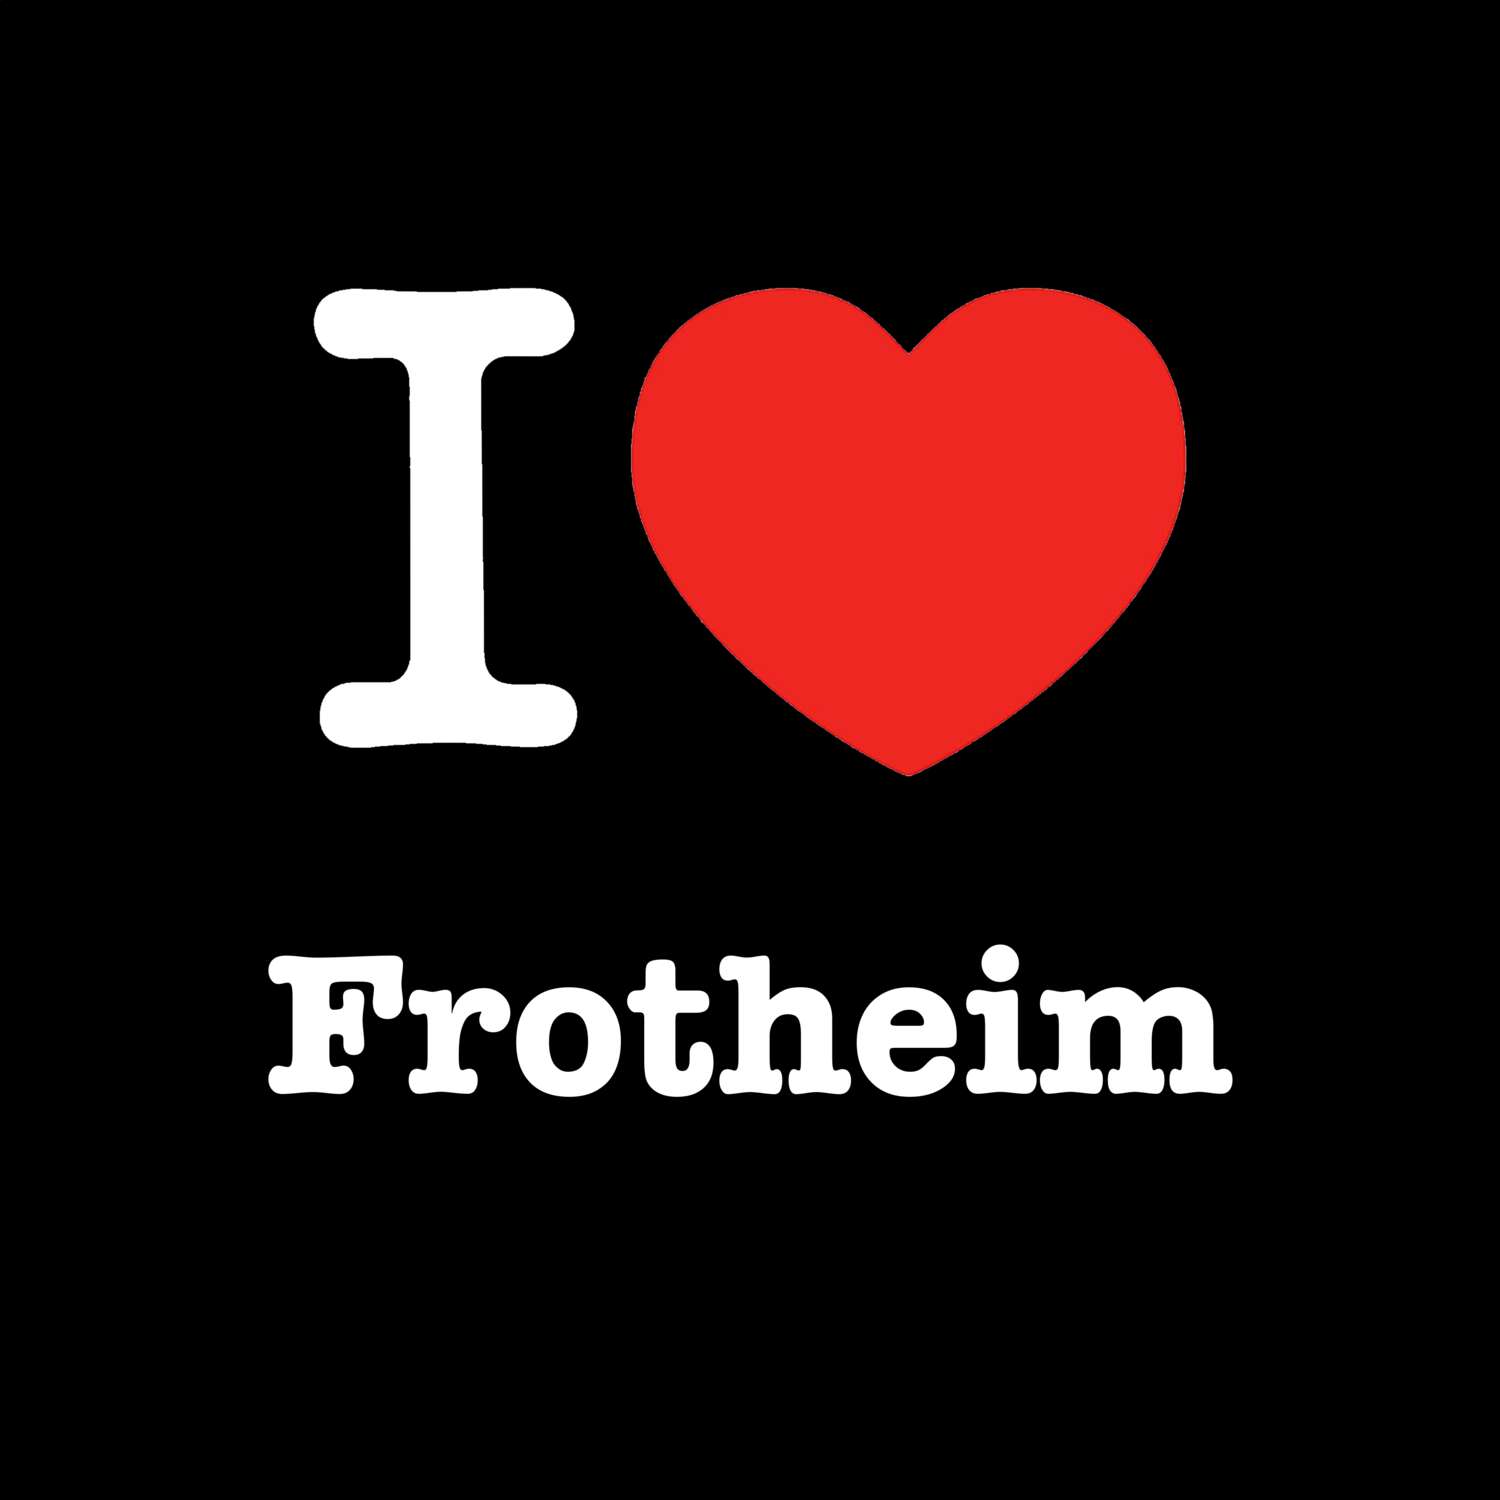 Frotheim T-Shirt »I love«